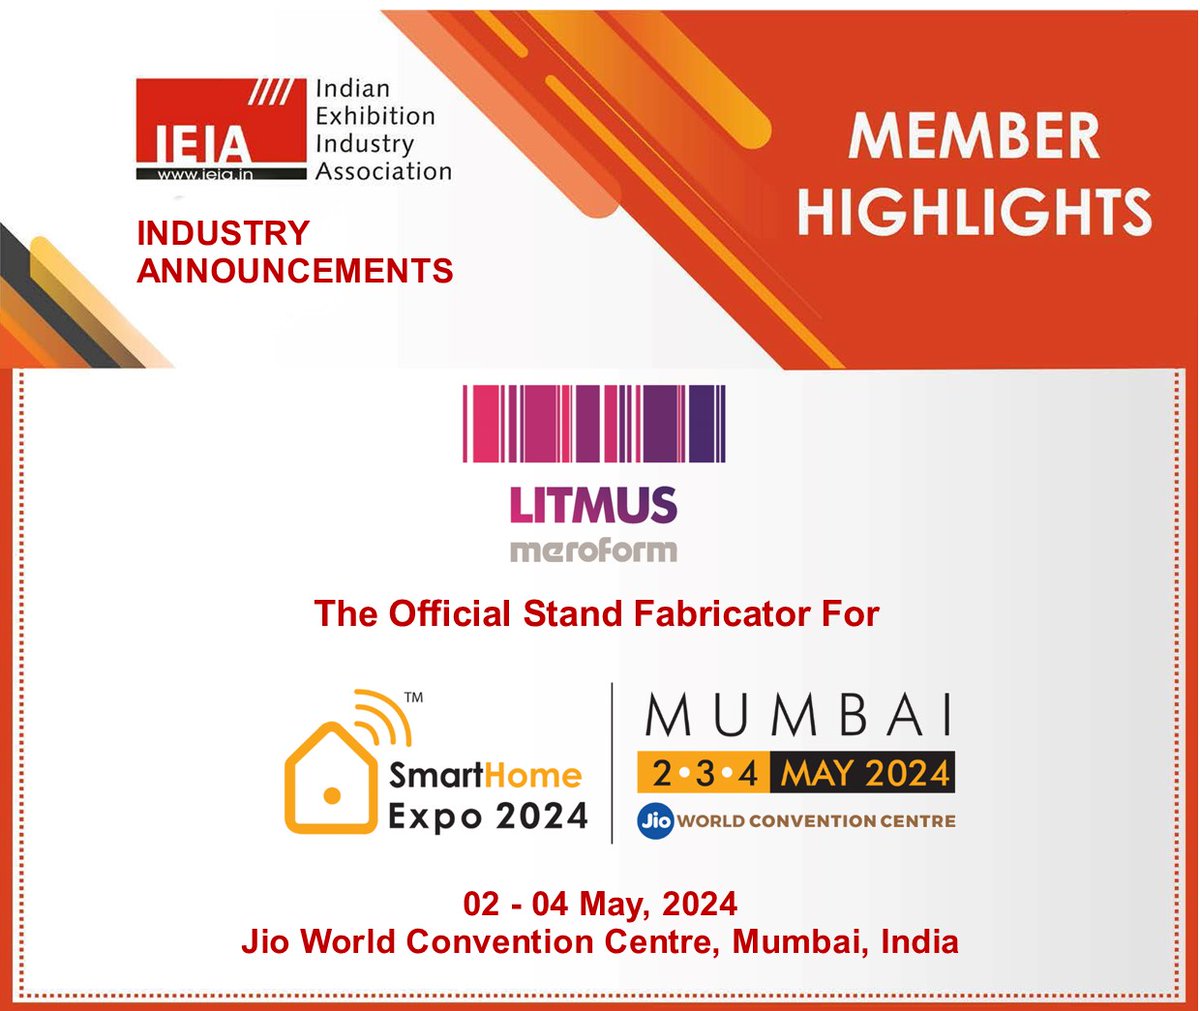 𝗜𝗡𝗗𝗨𝗦𝗧𝗥𝗬 𝗔𝗡𝗡𝗢𝗨𝗡𝗖𝗘𝗠𝗘𝗡𝗧- IEIA Member- Meroform India Pvt. Ltd. has been appointed as official Stand Fabricator for Smart Home Expo 2024, to be held Jio World Convention Centre, Mumbai, India For more details: litmusmeroform.com #Meroform #Litmus #IEIA